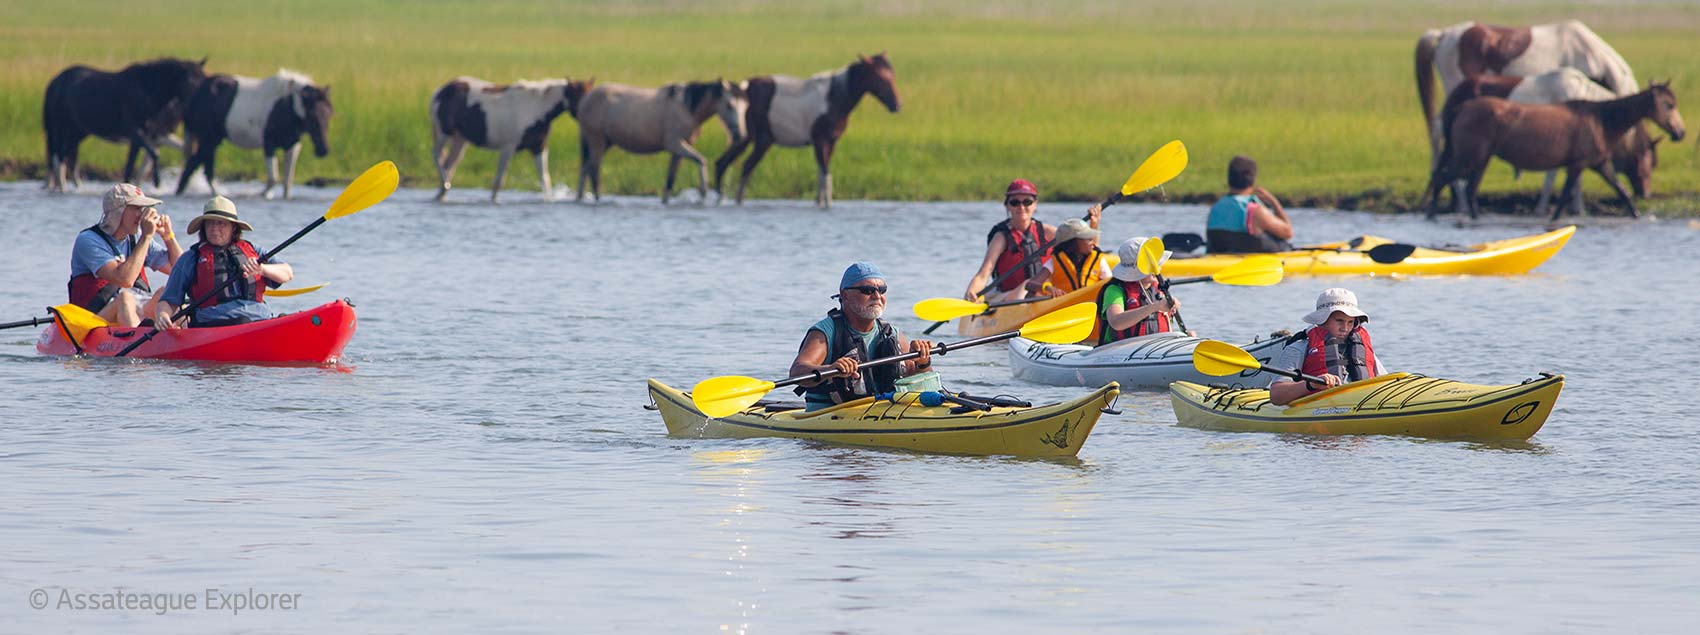 Kayak tour to see wild ponies along Assateague Island